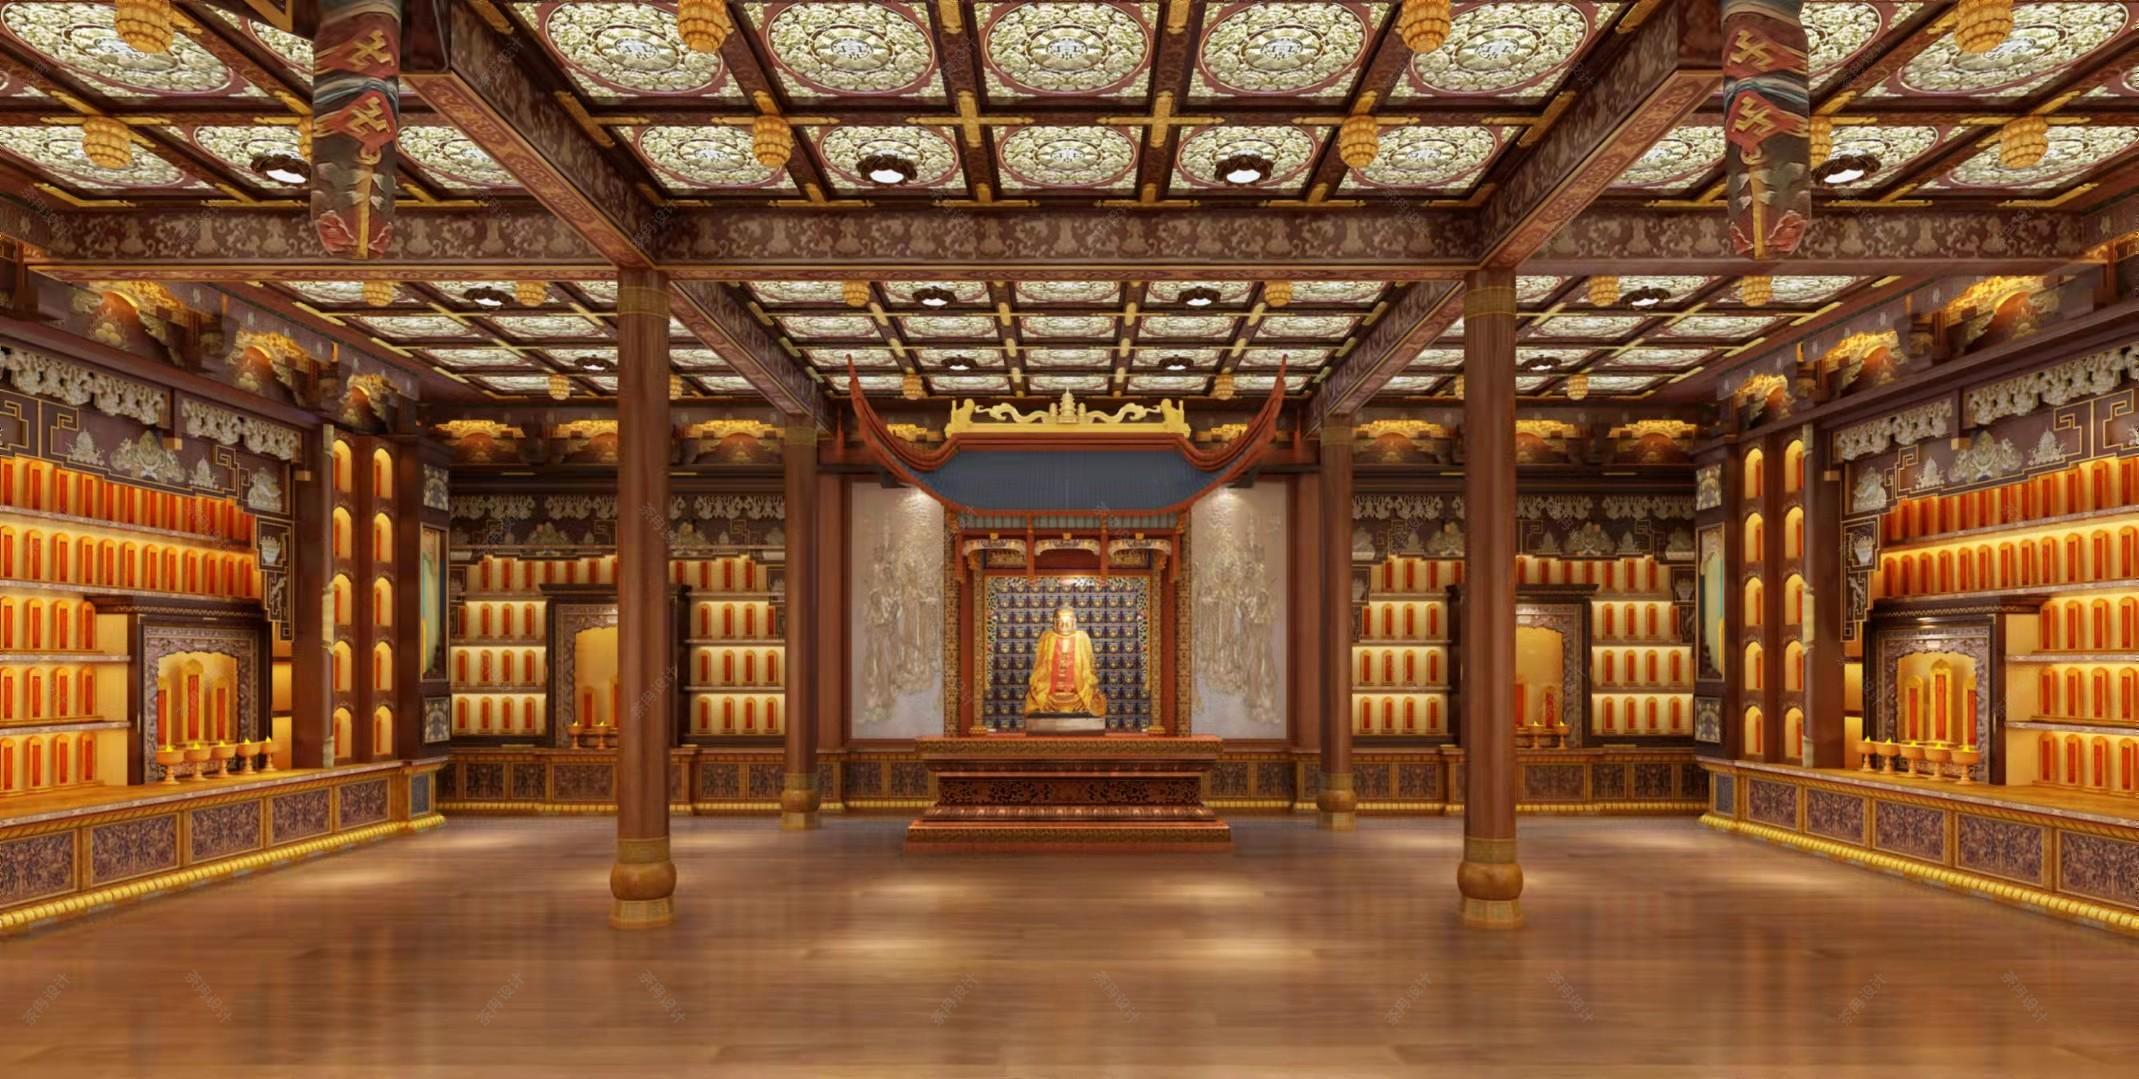 清风明月生禅机——佛堂的中式装修_紫云轩中式设计装饰机构